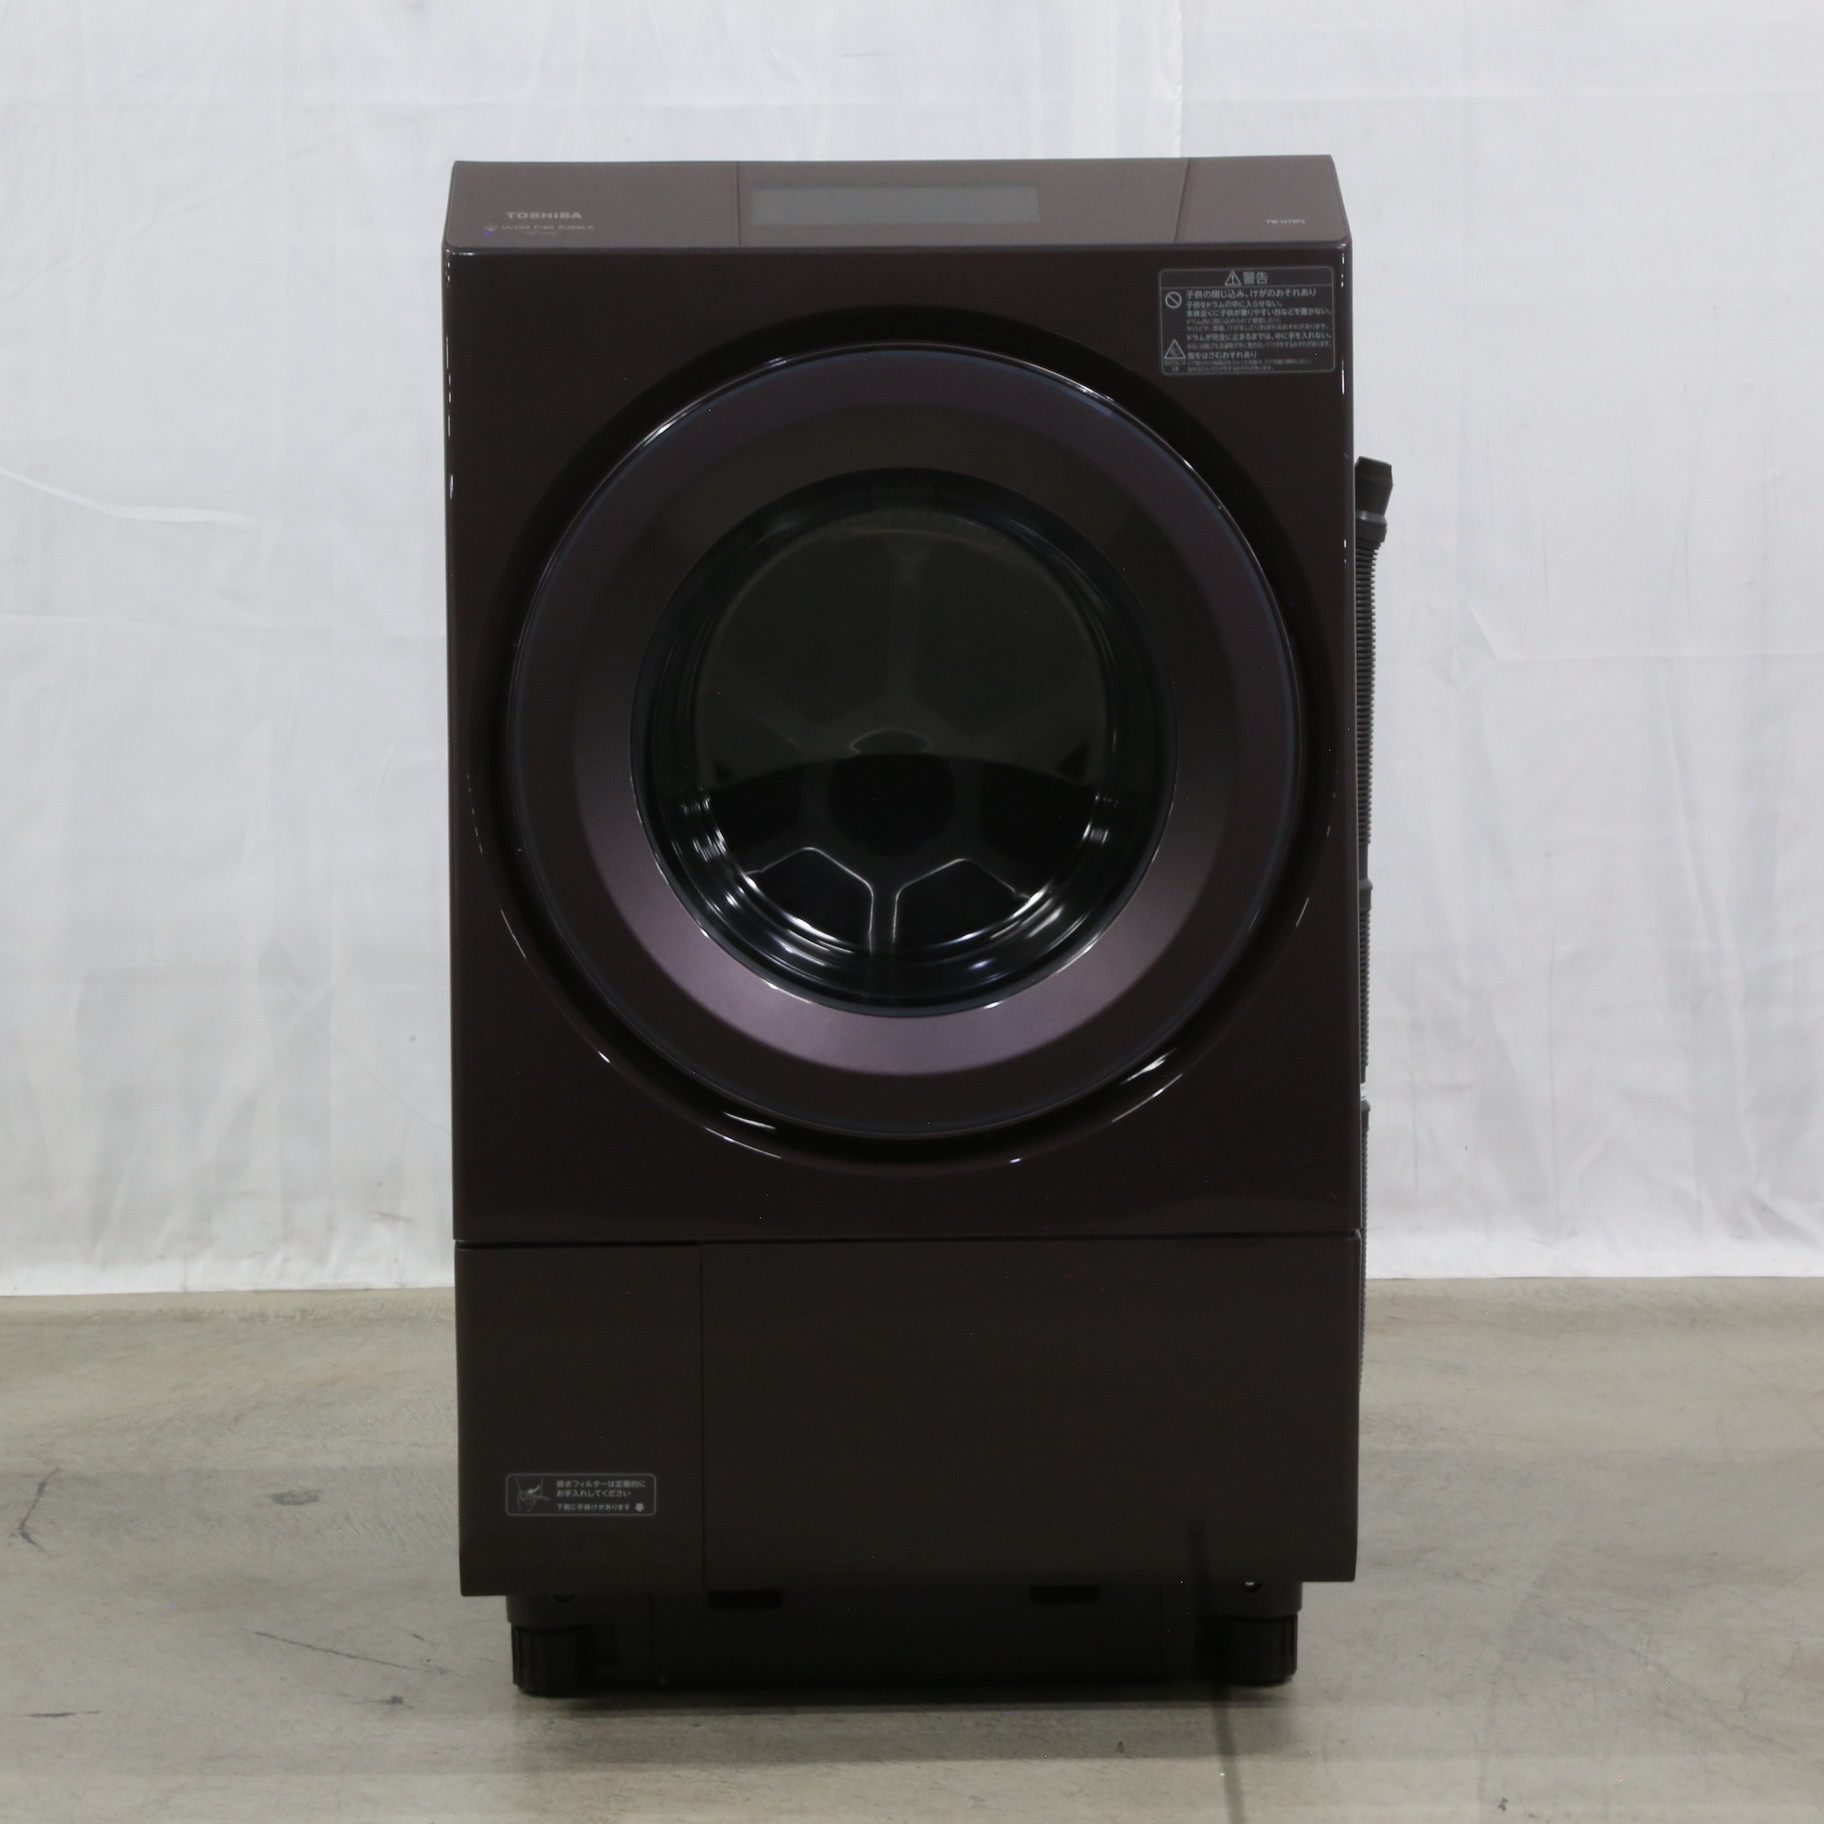 ドラム式洗濯機 東芝 ザブーンTW-127X8L ブラウン - 洗濯機